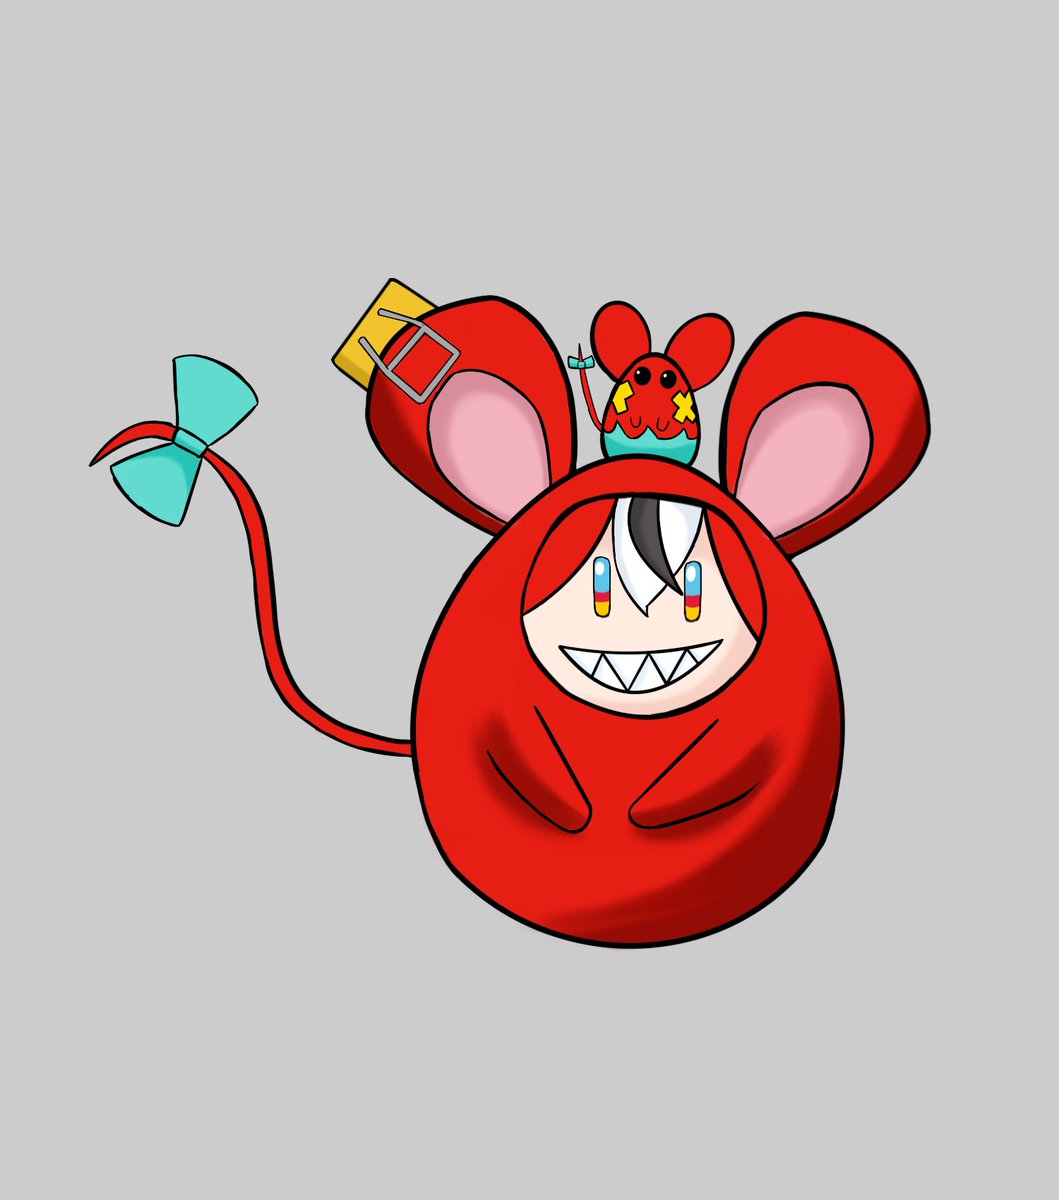 Hakos Baelz🎲holoEN on X: 🎶KARAOKE NIGHT! 🎶 just a cute lil rat